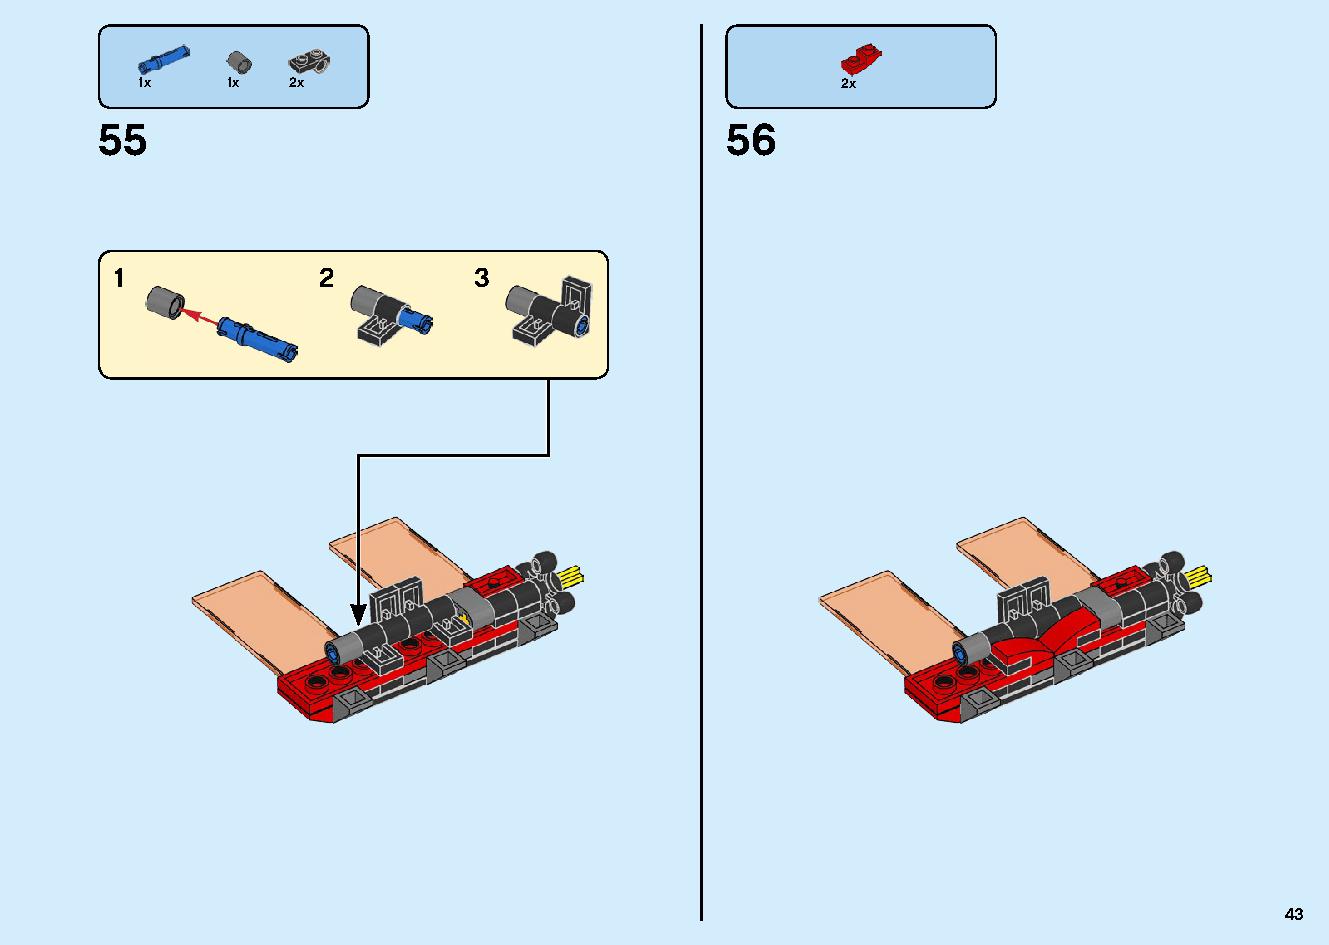 マッドキング神殿 71712 レゴの商品情報 レゴの説明書・組立方法 43 page